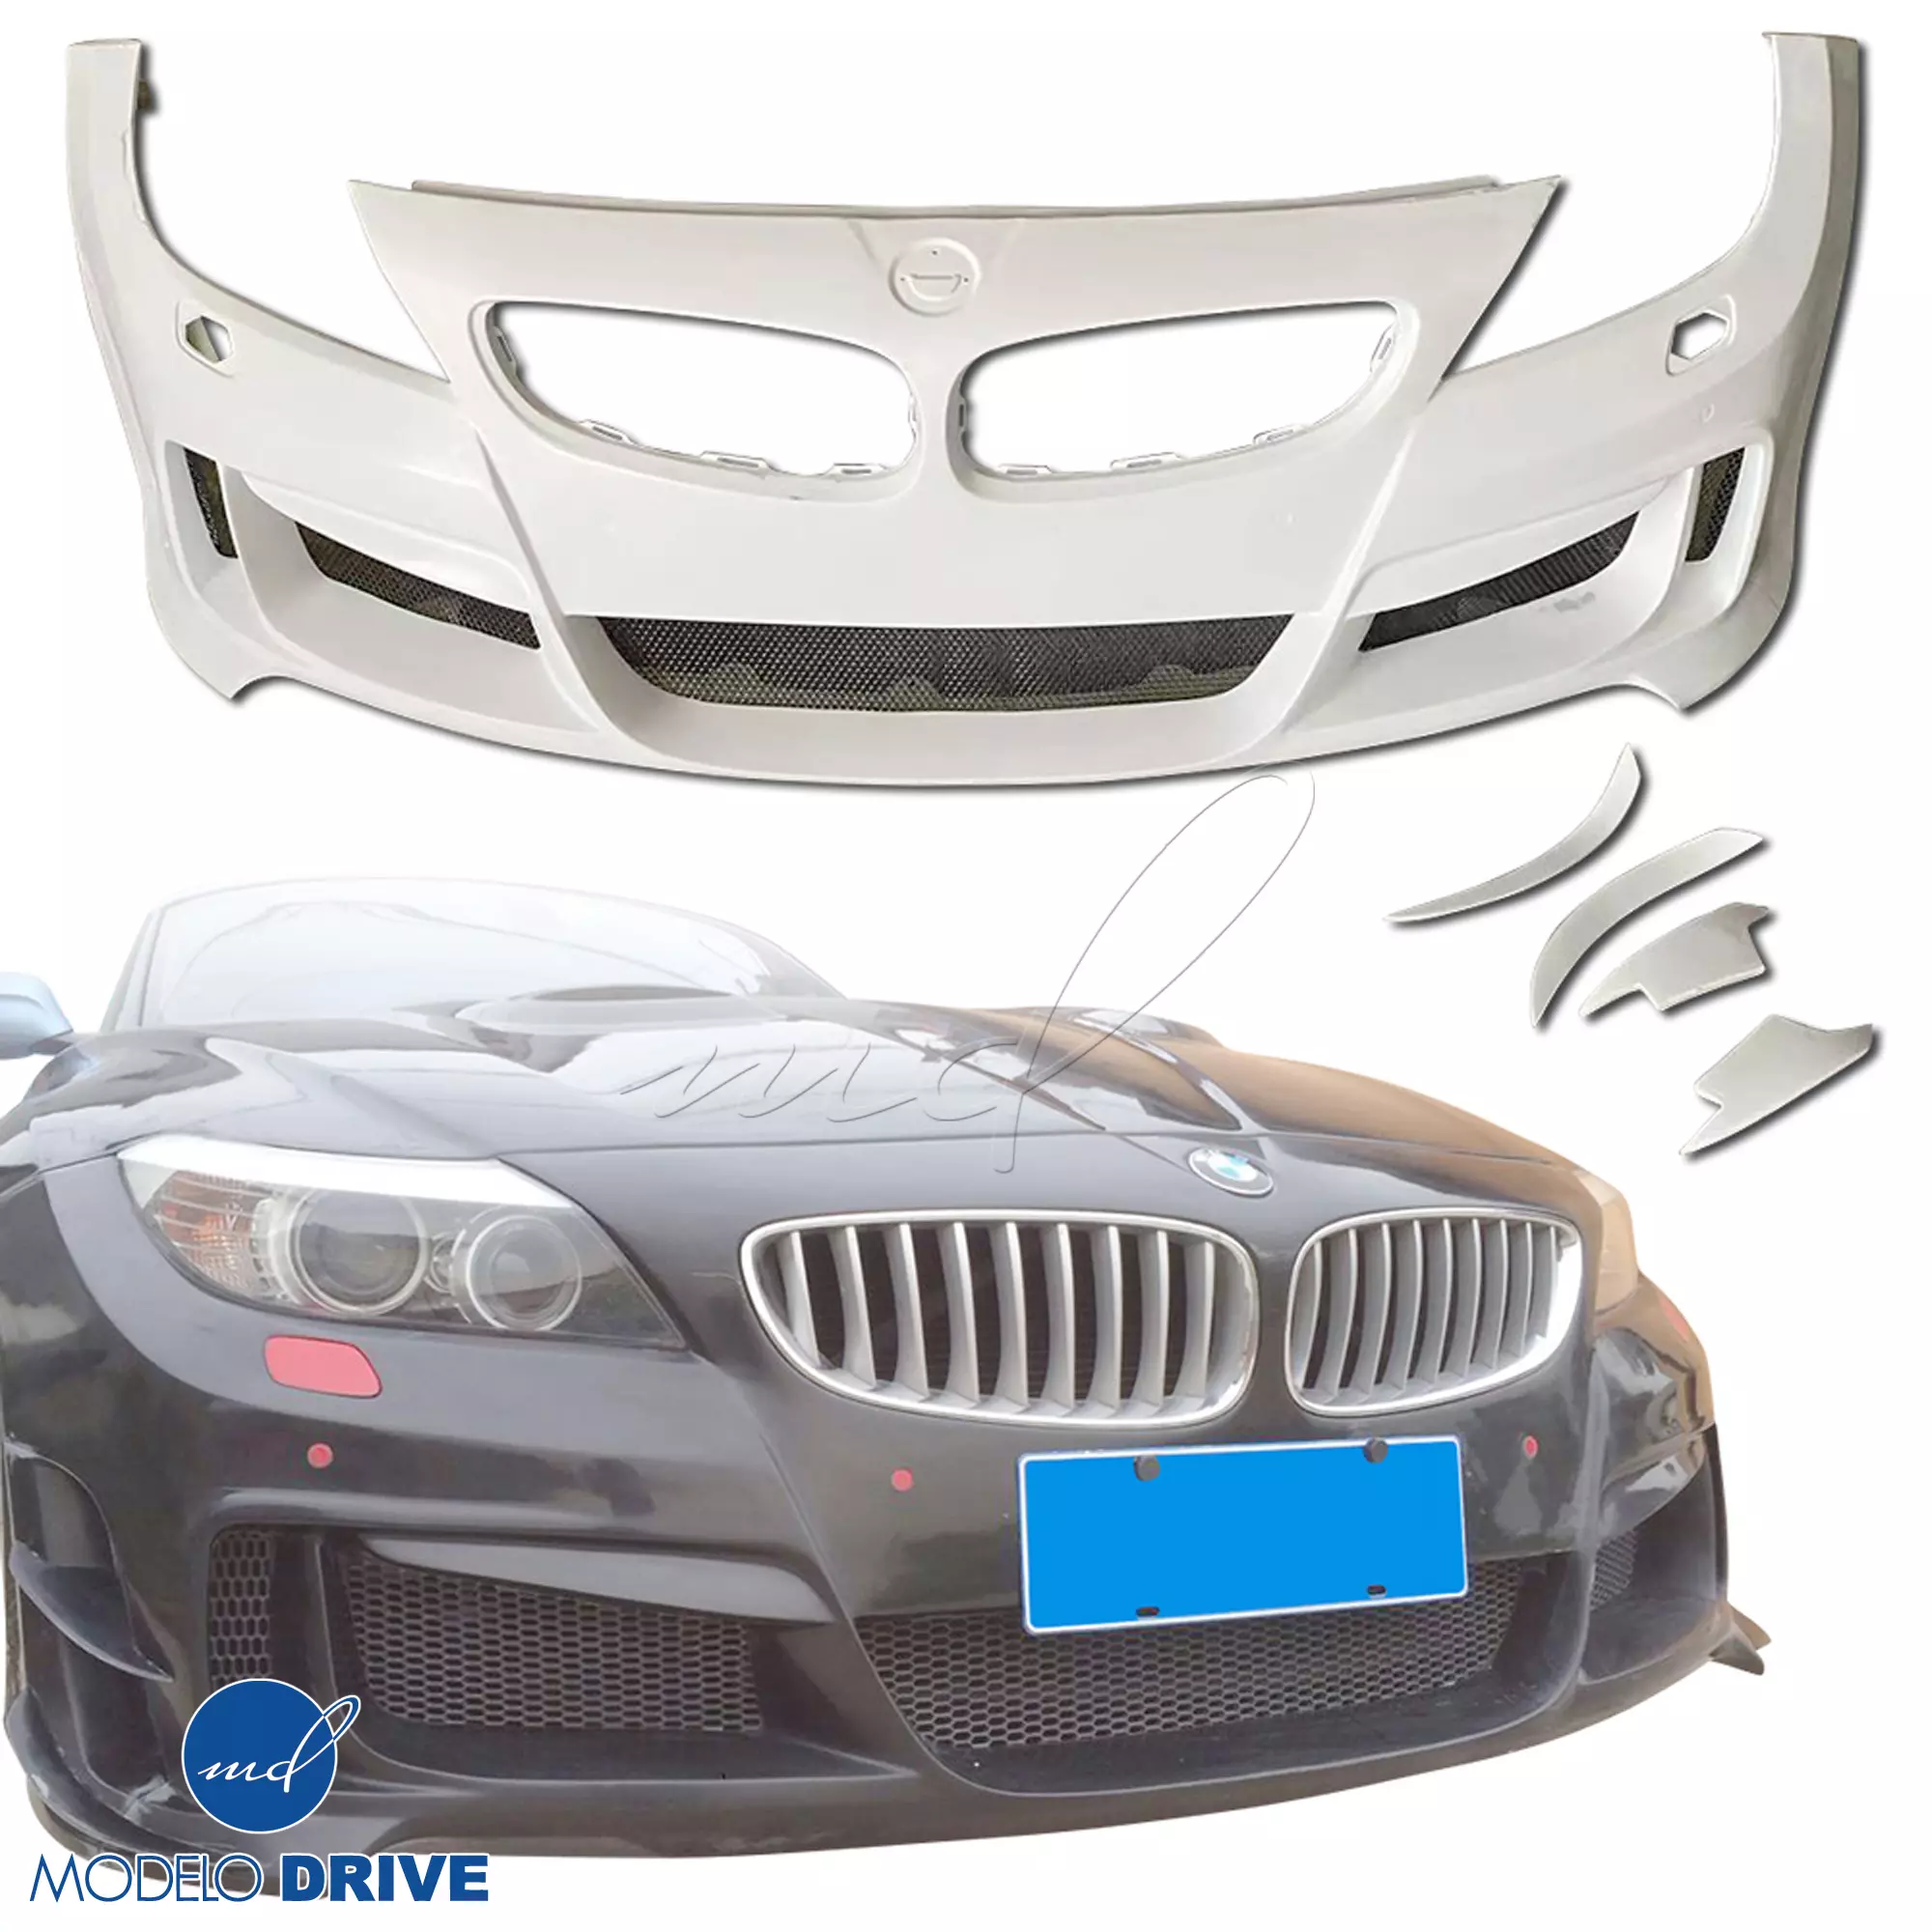 ModeloDrive FRP LVL Wide Body Kit > BMW Z4 E89 2009-2016 - Image 75